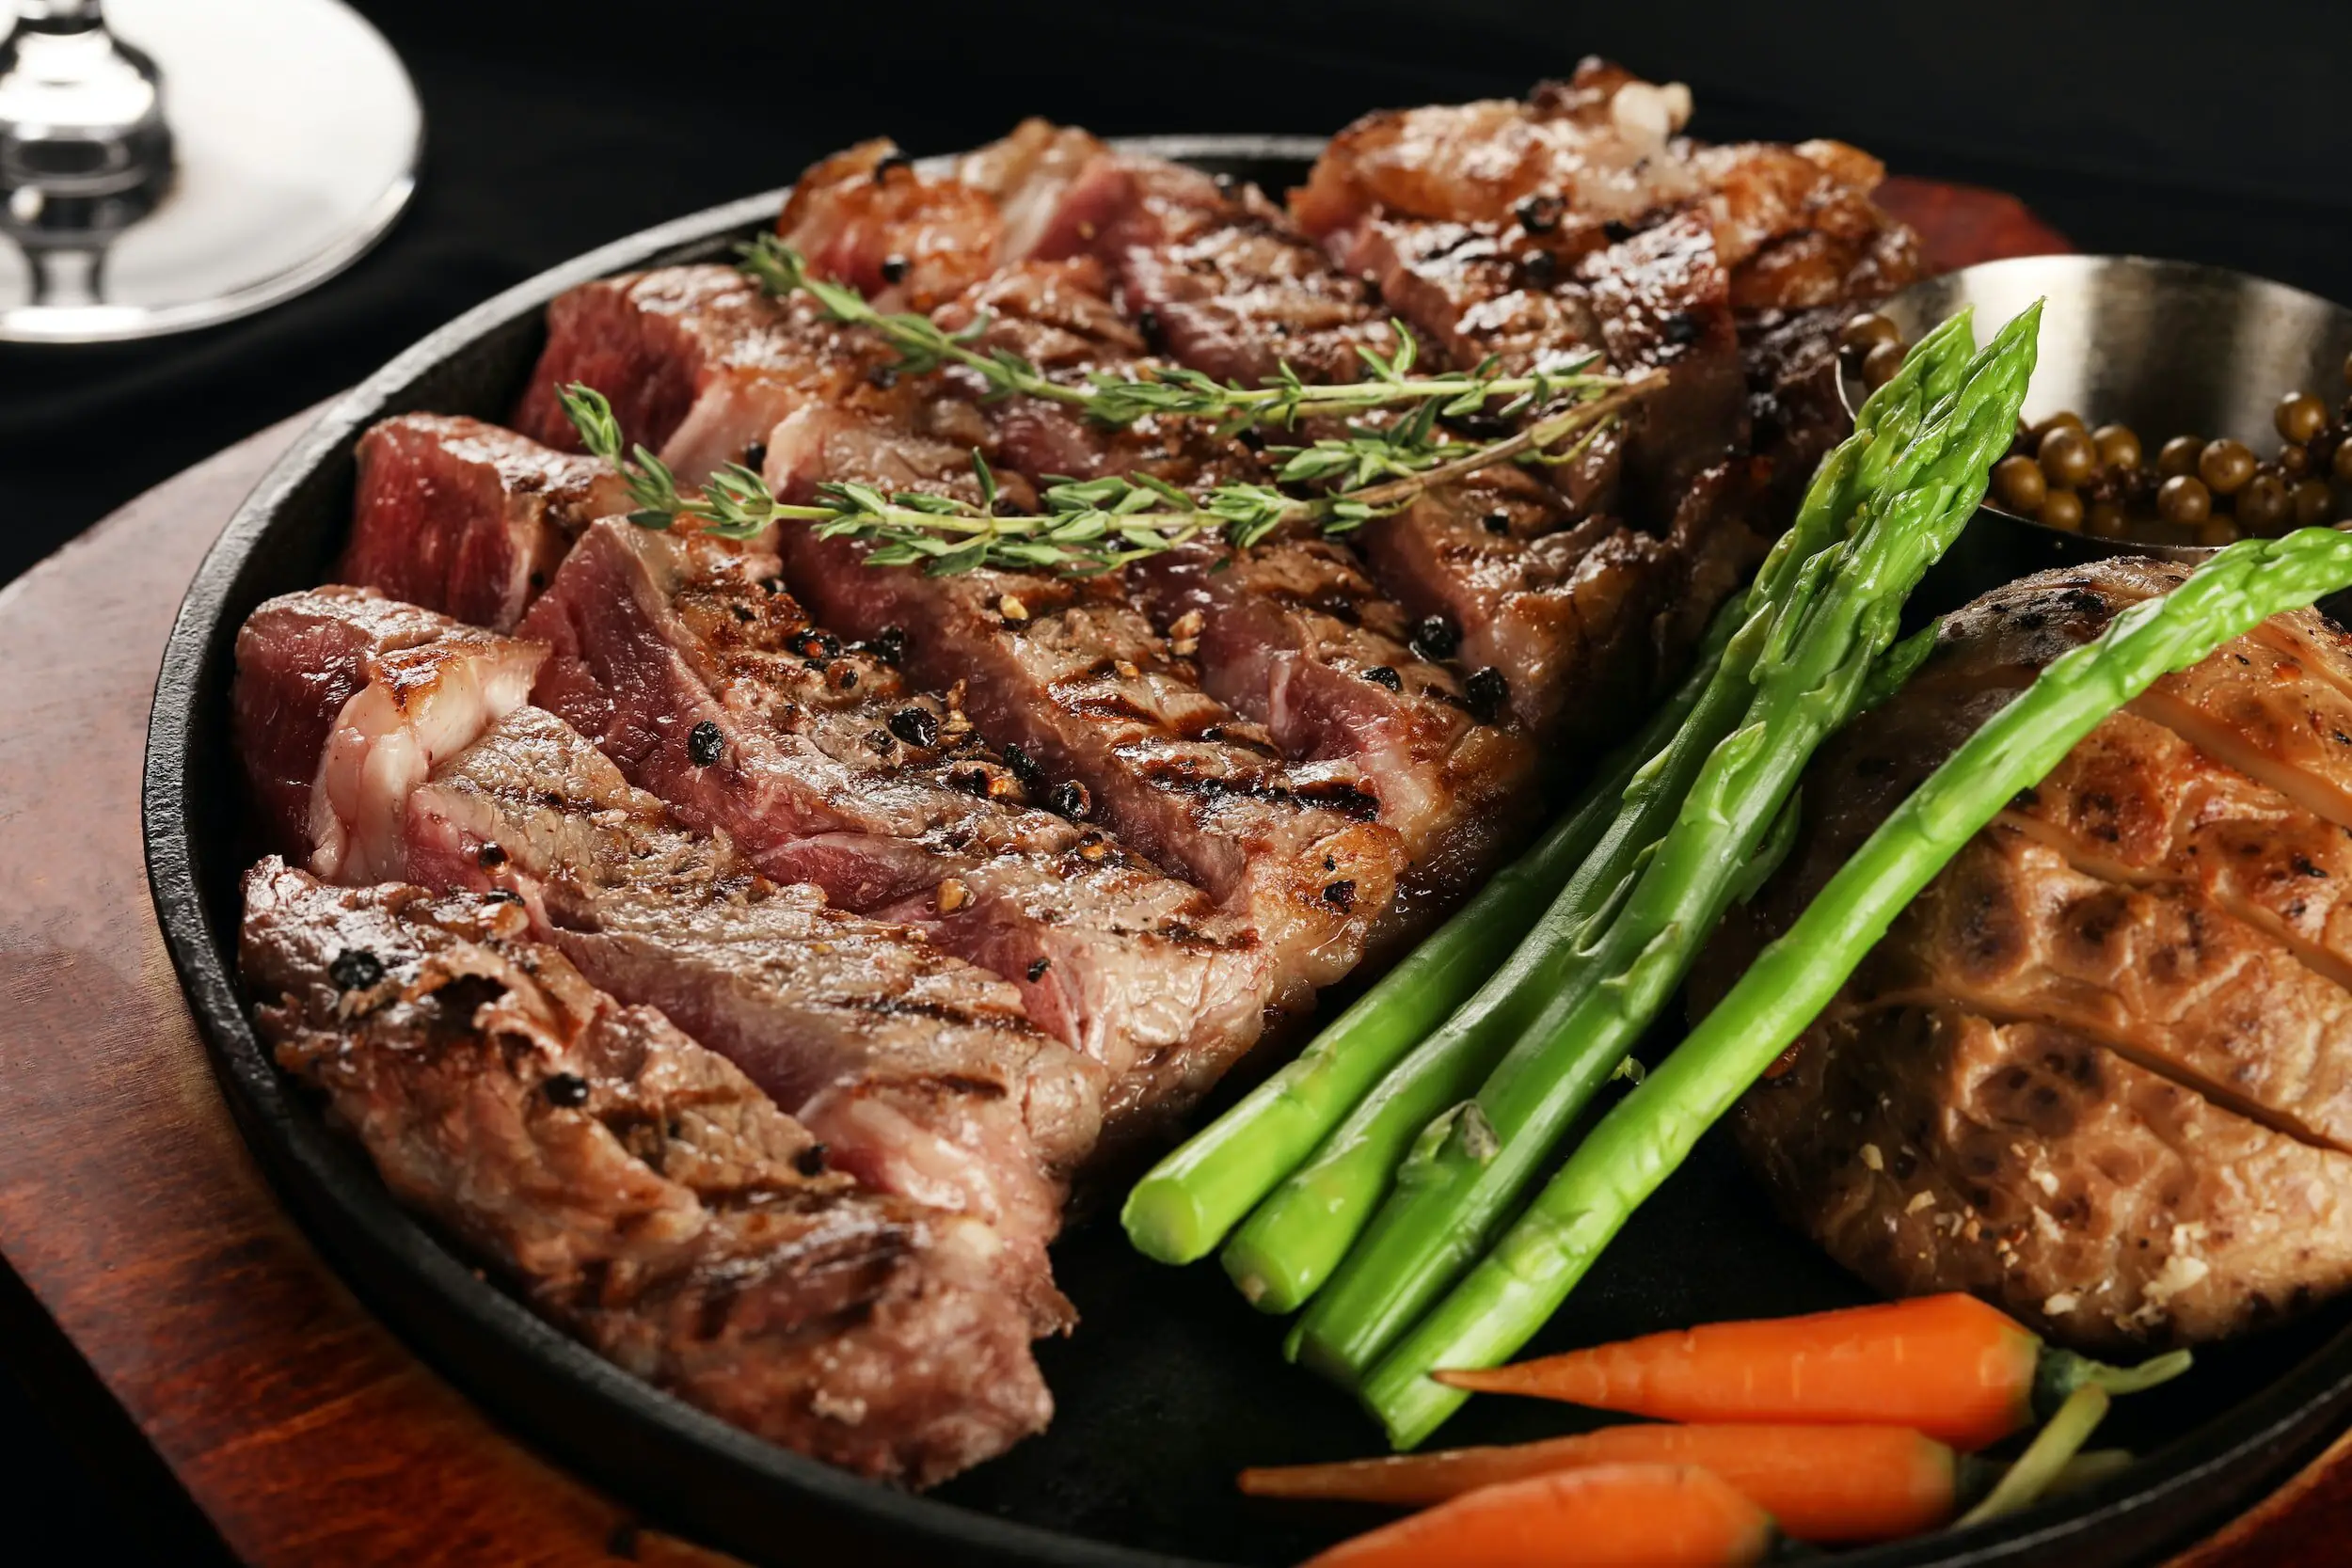 petit verdot vs cabernet Franc pairing - steak